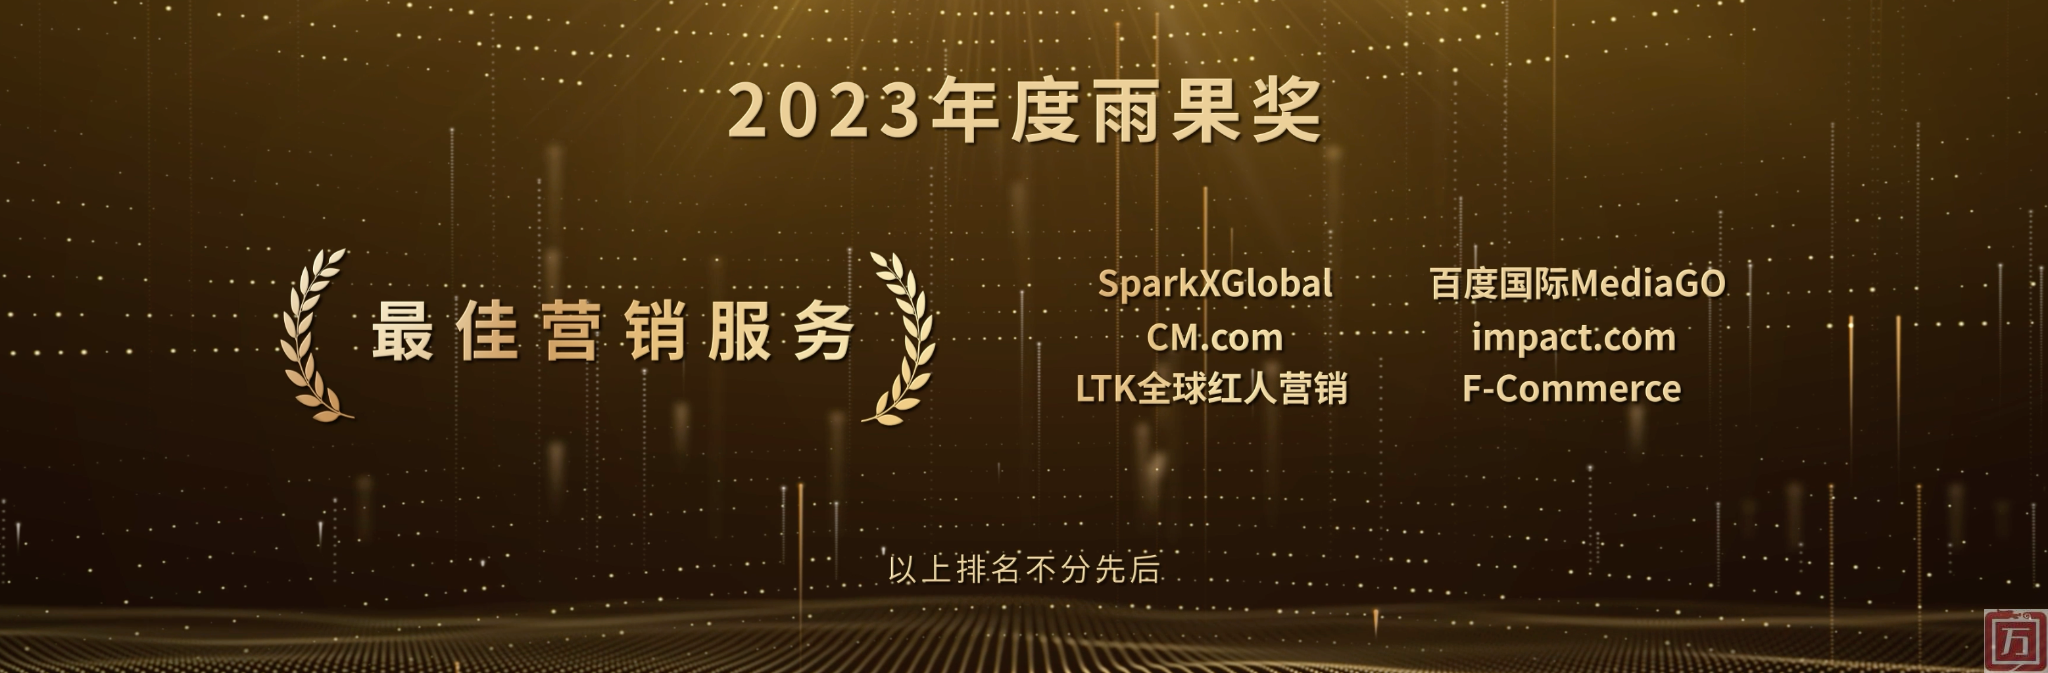 impact.com荣膺2023年度“雨果奖” 最佳营销服务奖(图1)